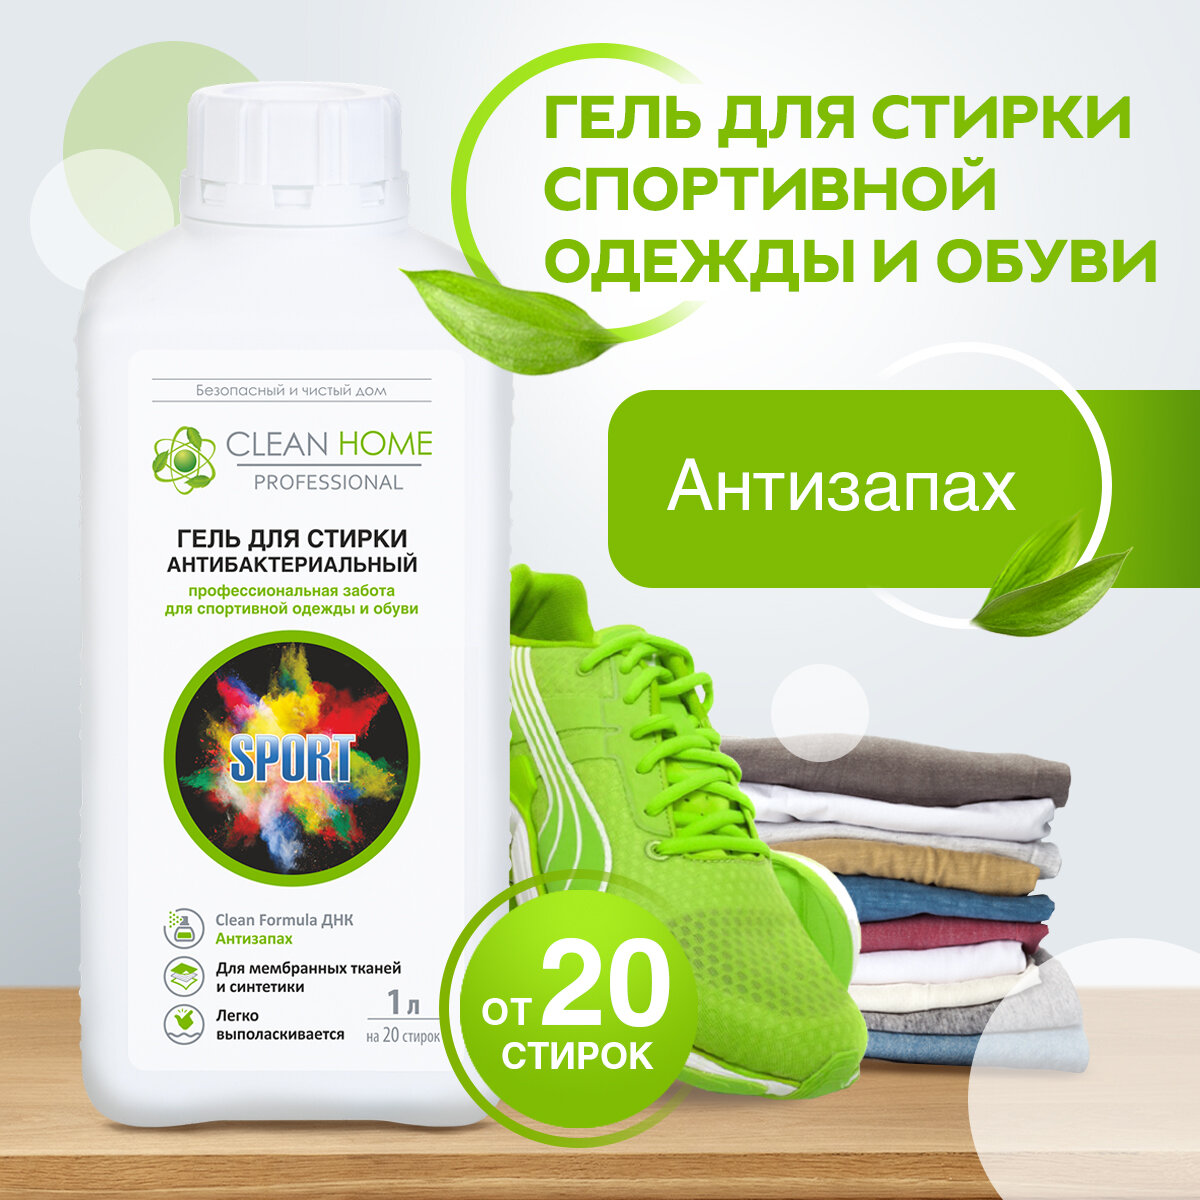 CLEAN HOME Гель для стирки антибактериальный для спортивной одежды и обуви формула "Антизапах" 1л